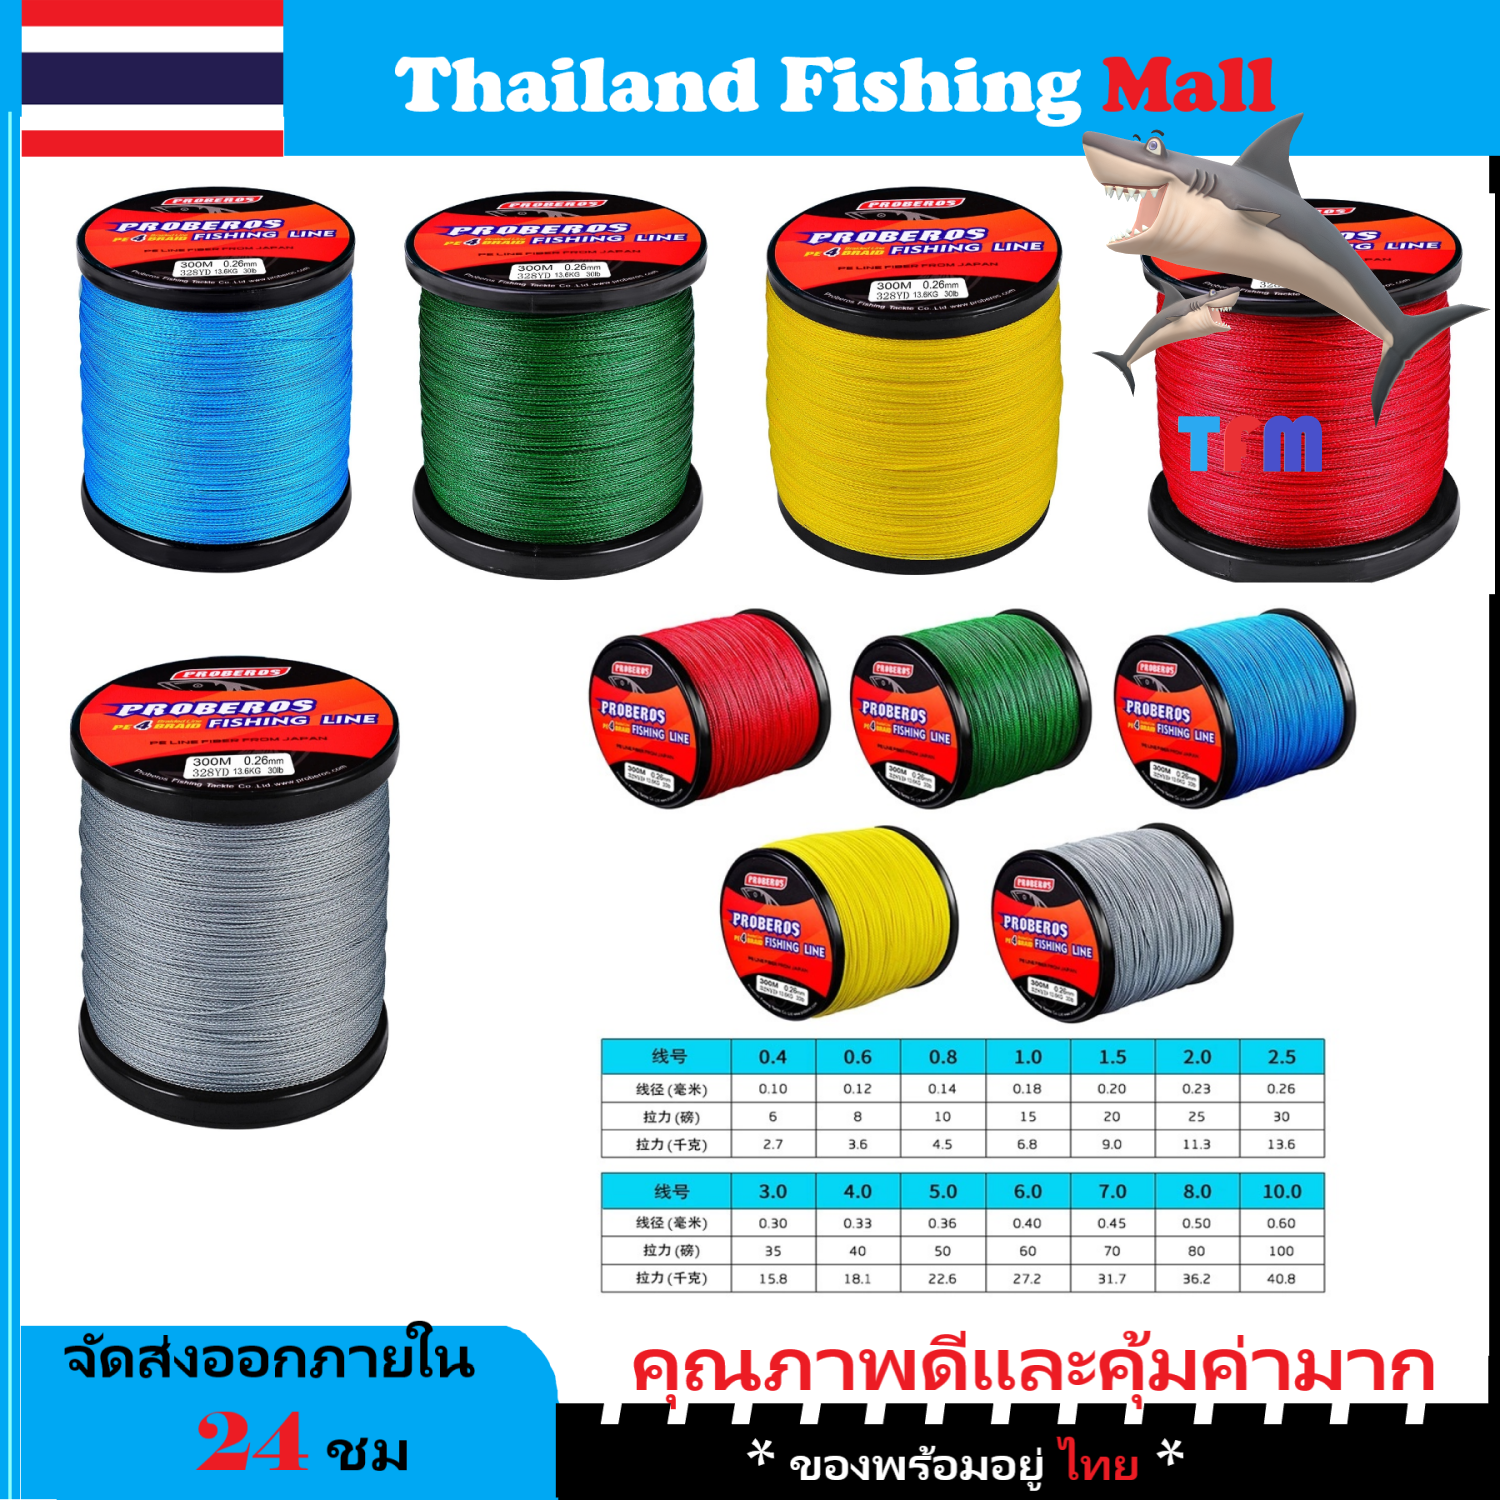 1-2 วัน (ส่งไว ราคาส่ง) 300 เมตร สาย PE ถัก 4 สีเทา/ฟ้า/เขียว/แดง/เหลือง* เหนียว ทน ยาว - ศูนย์การค้าไทยฟิชชิ่ง [ Thailand Fishing Mall ] Fishing line wire PROBEROS